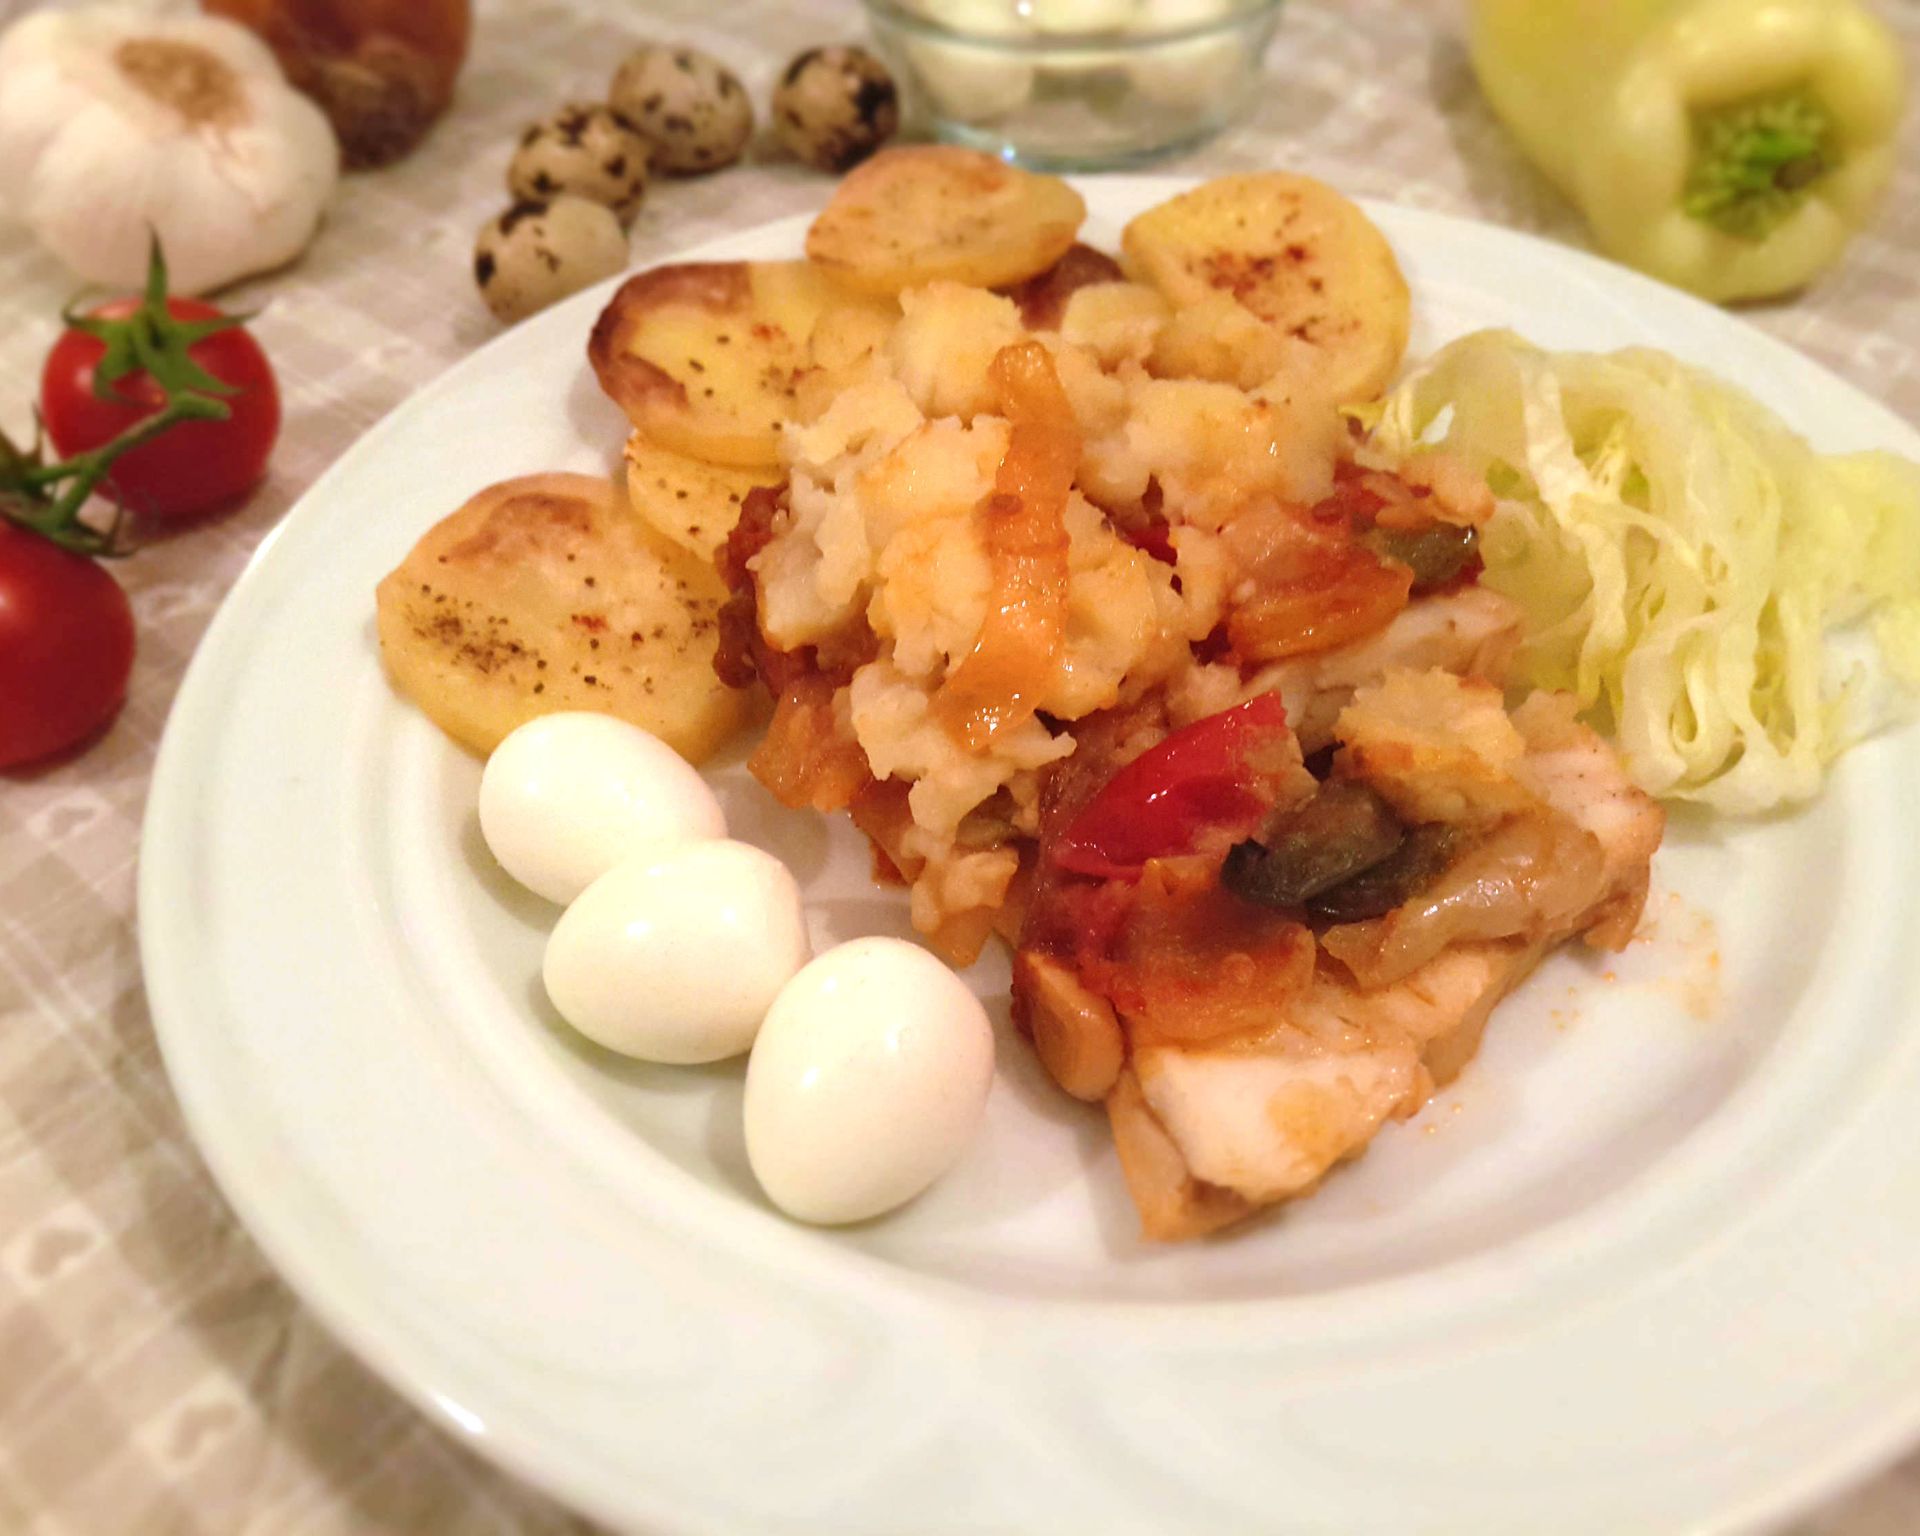 V rúre pečené rybie filety so zemiakovou kašou a zeleninou. Na tanieri ozdobené zeleninou a prepeličími vajciami.